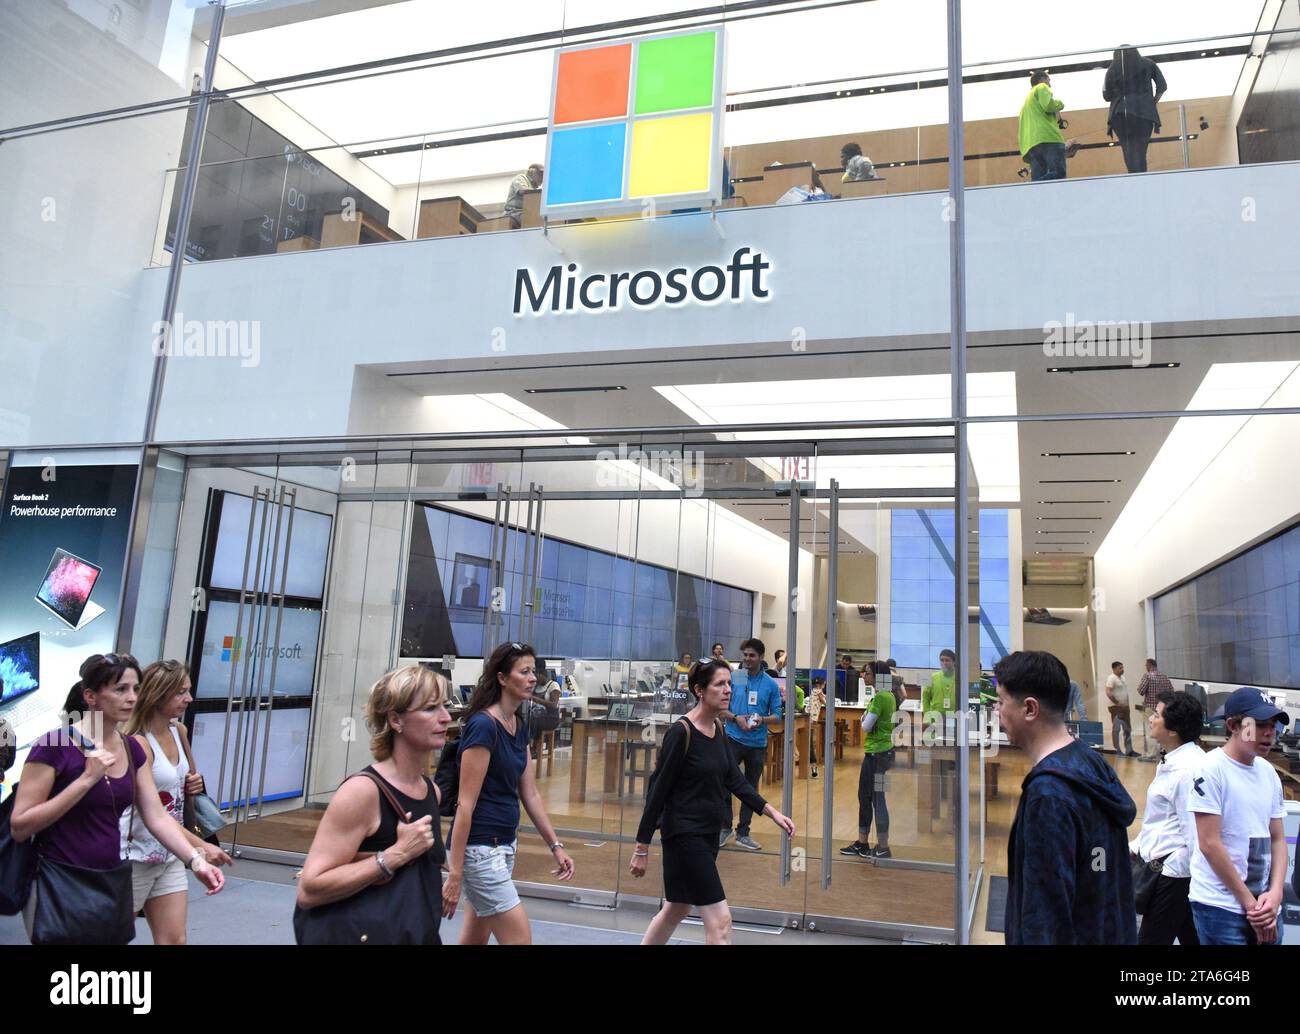 New York, USA - 25. Mai 2018: Fußgänger gehen am Microsoft Store auf der Fifth Avenue in New York City vorbei. Stockfoto